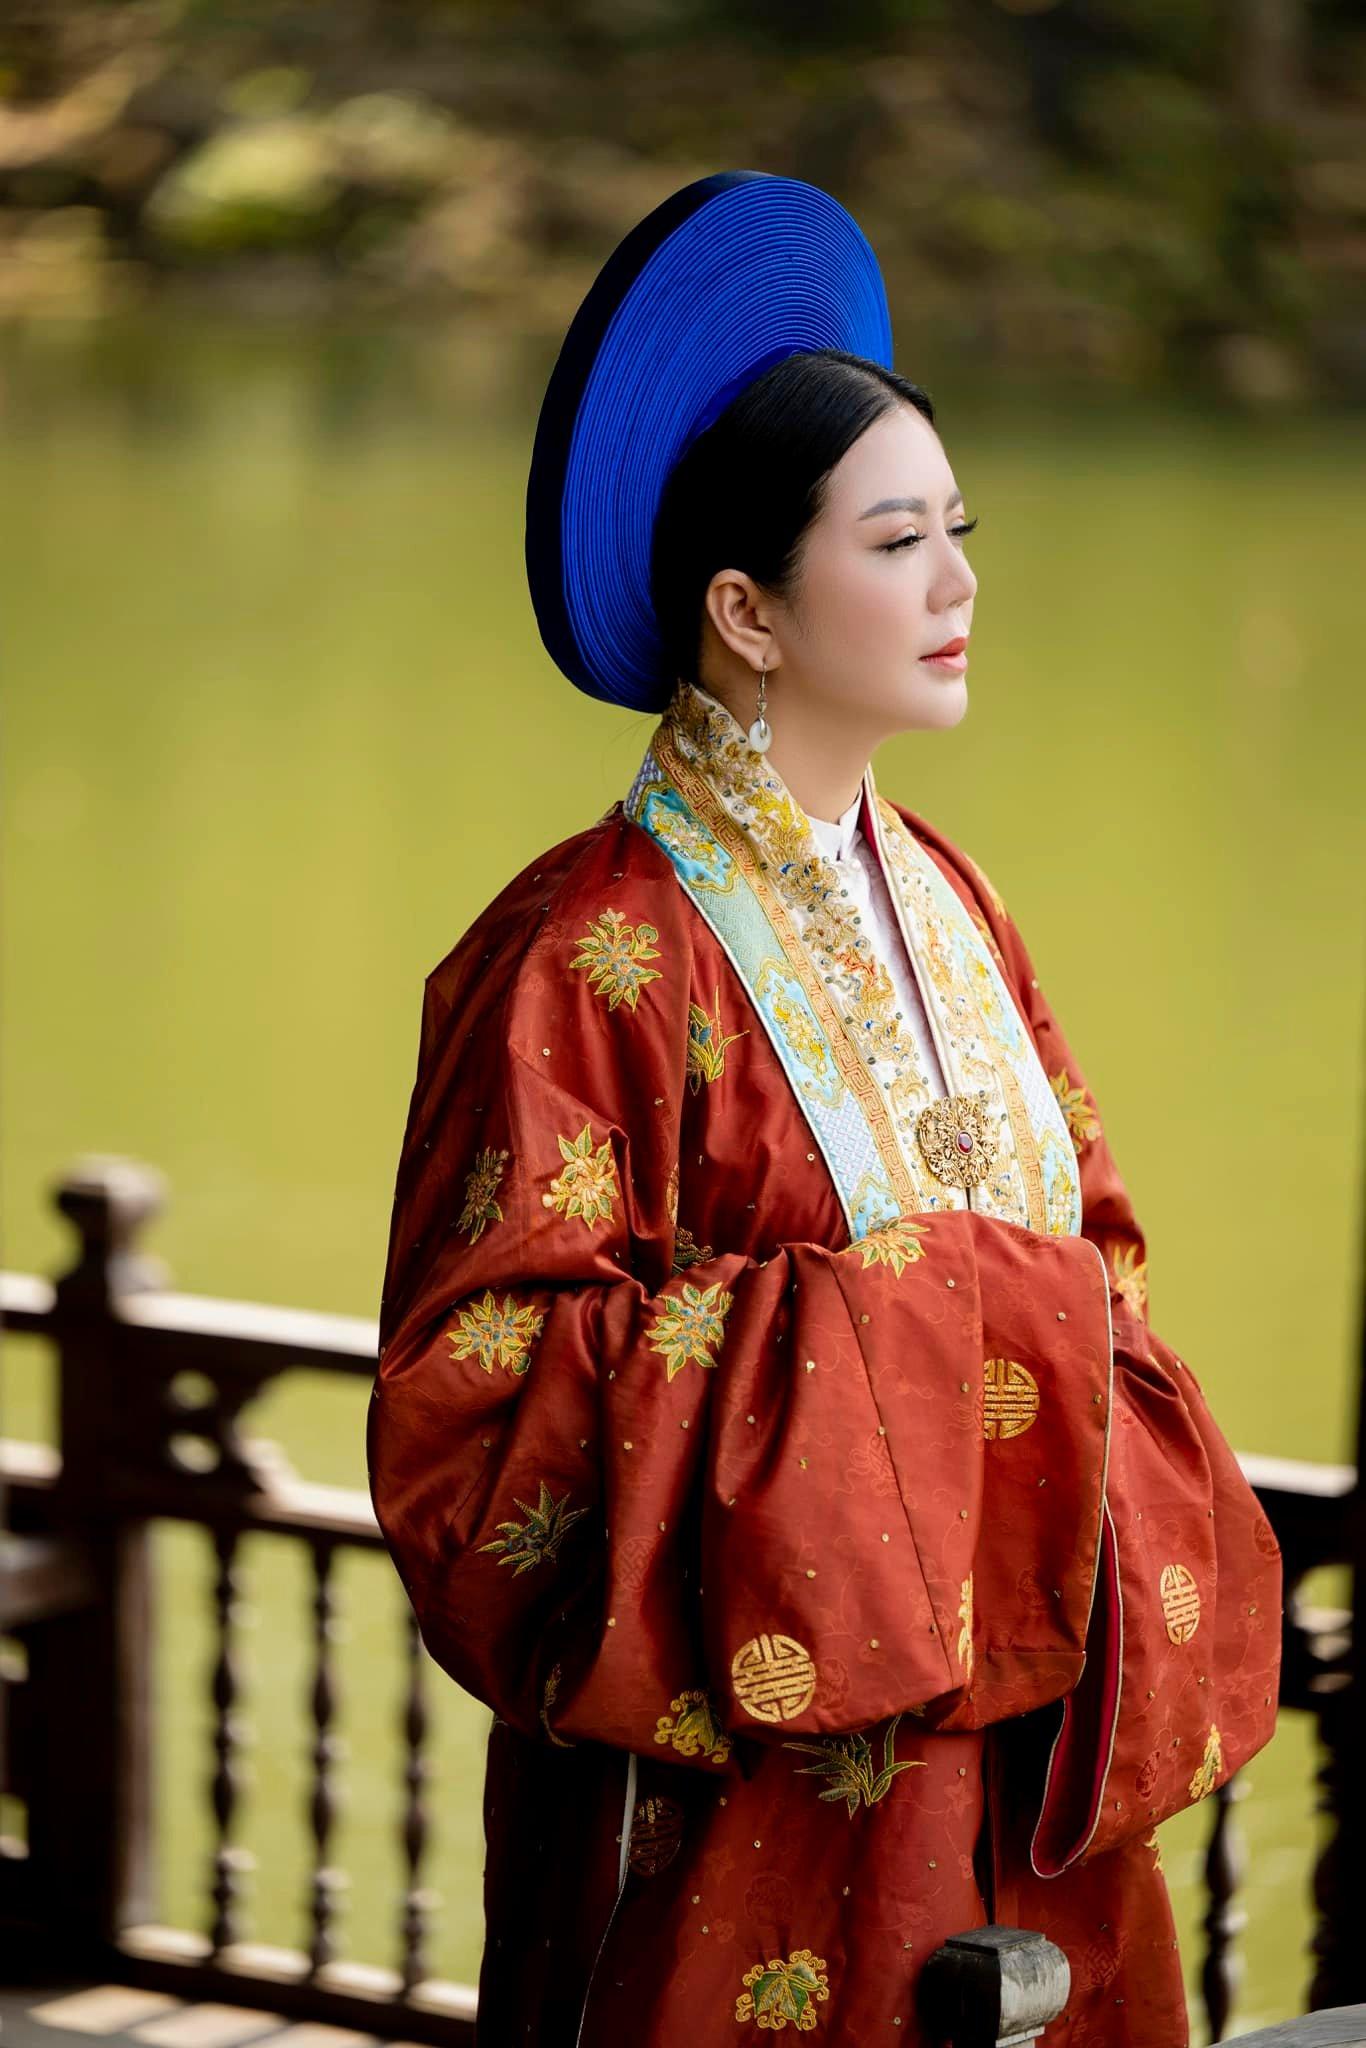 Ca sĩ Đinh Hiền Anh và tình yêu đặc biệt với trang phục truyền thống Việt  - Ảnh 5.